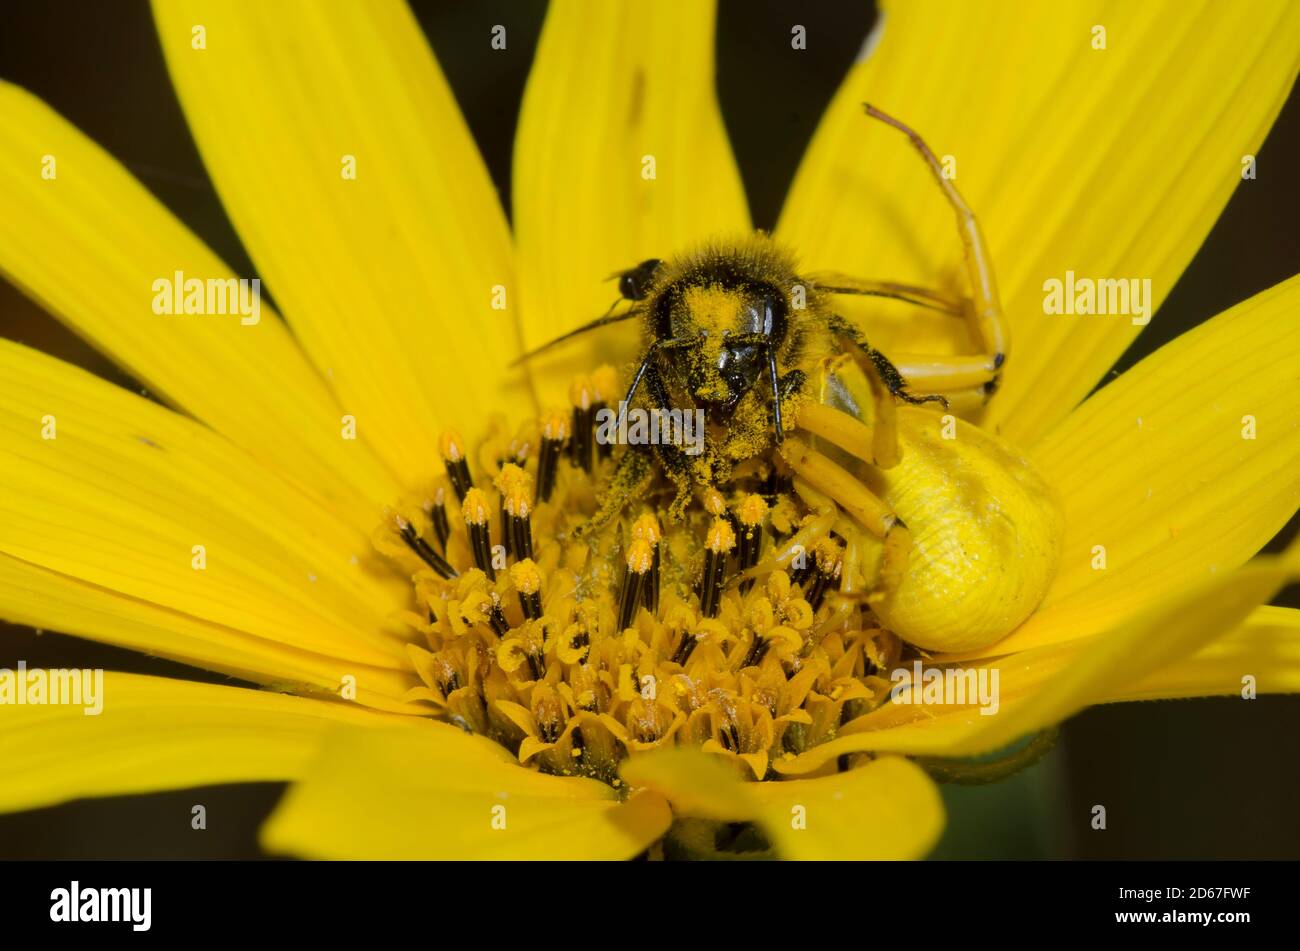 Whitebanded Crab Spider,  Misumenoides formosipes, feeding on captured Honey Bee, Apis mellifera, on Maximilian sunflower, Helianthus maximiliani Stock Photo